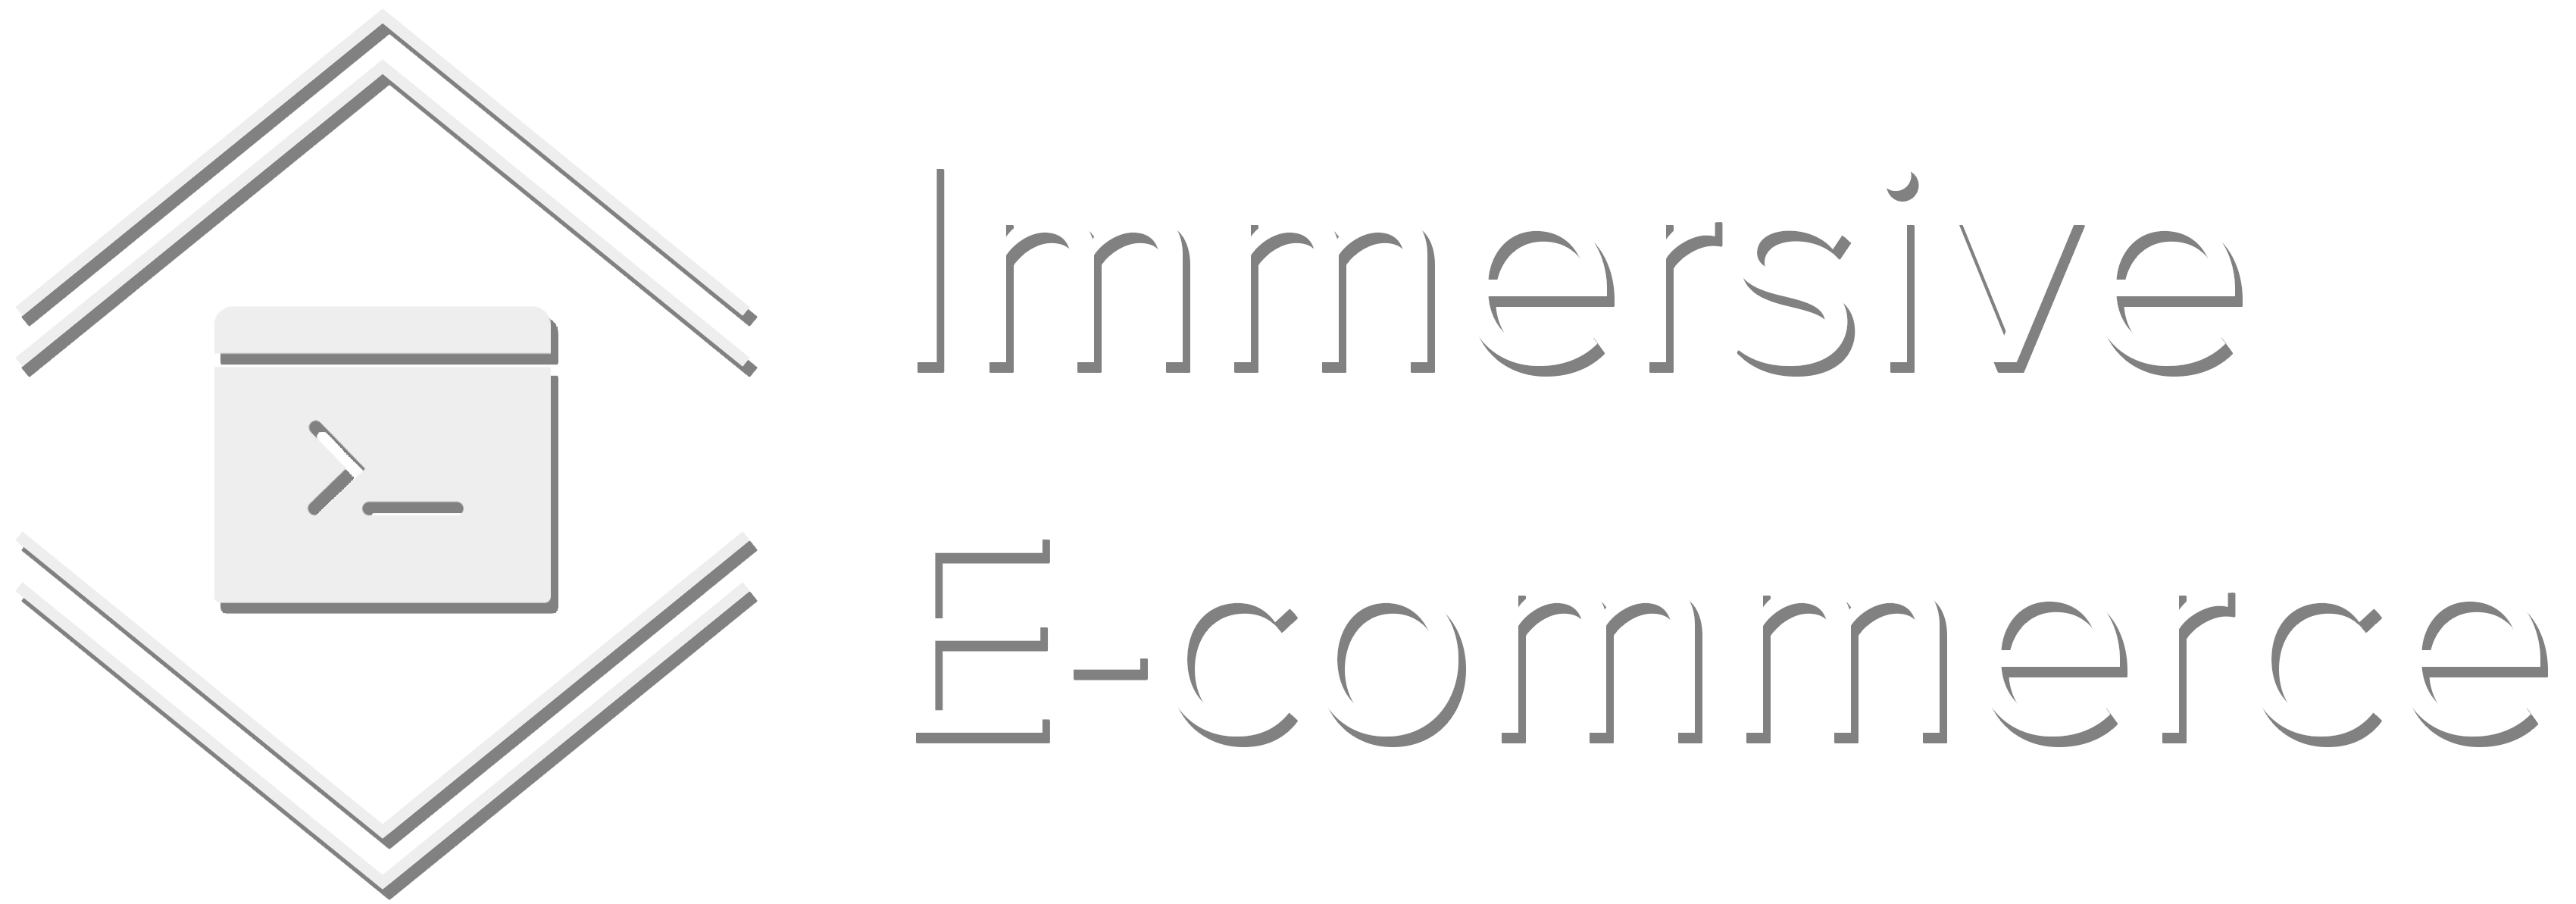 Immersive E-commerce